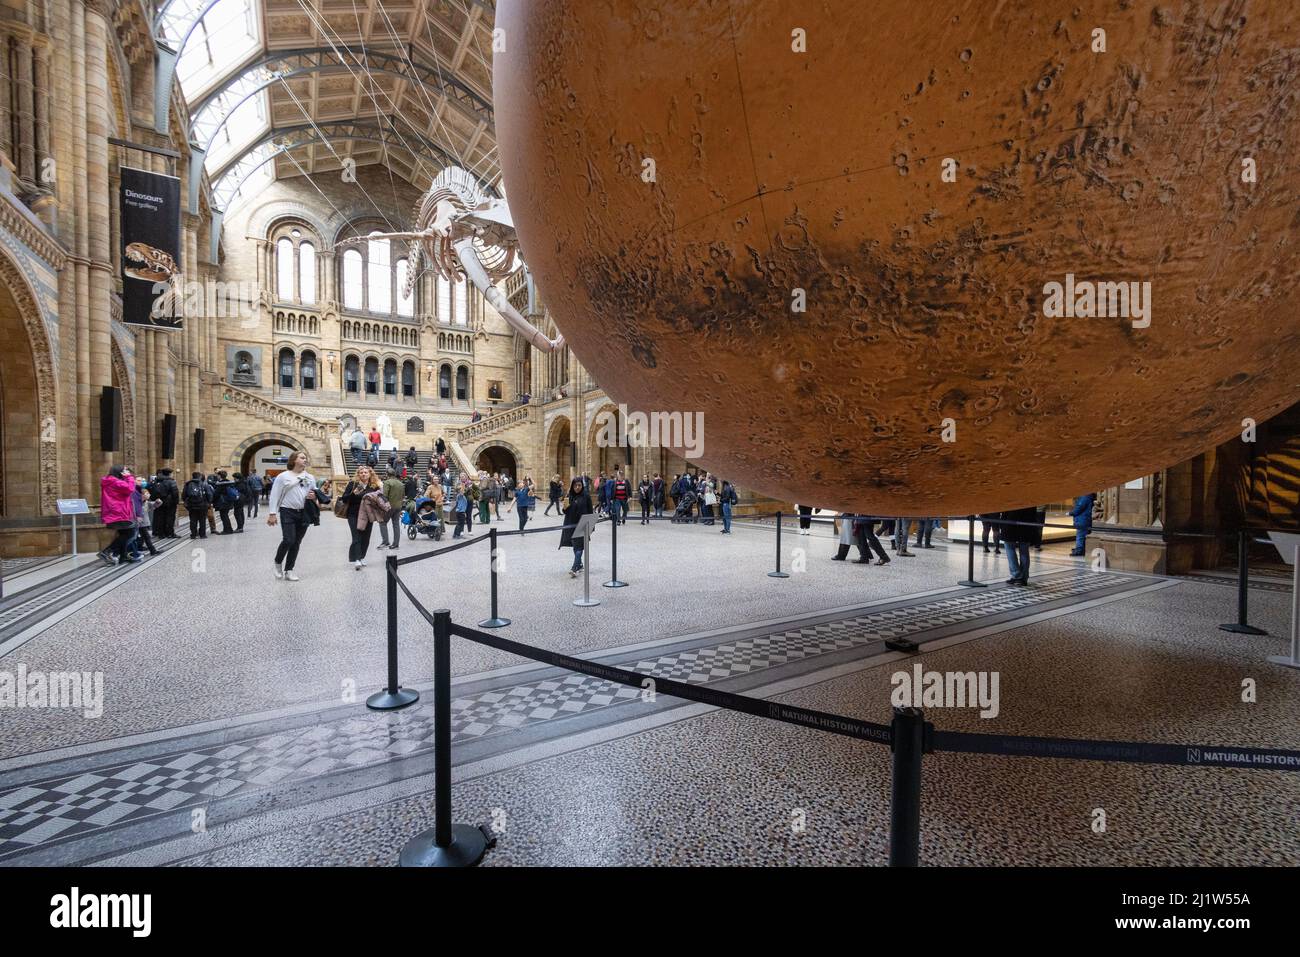 Luke Jerram Mars; persone che guardano il modello d'arte di Marte di Luke Jerram nella sala principale del Natural History Museum, Londra UK Foto Stock